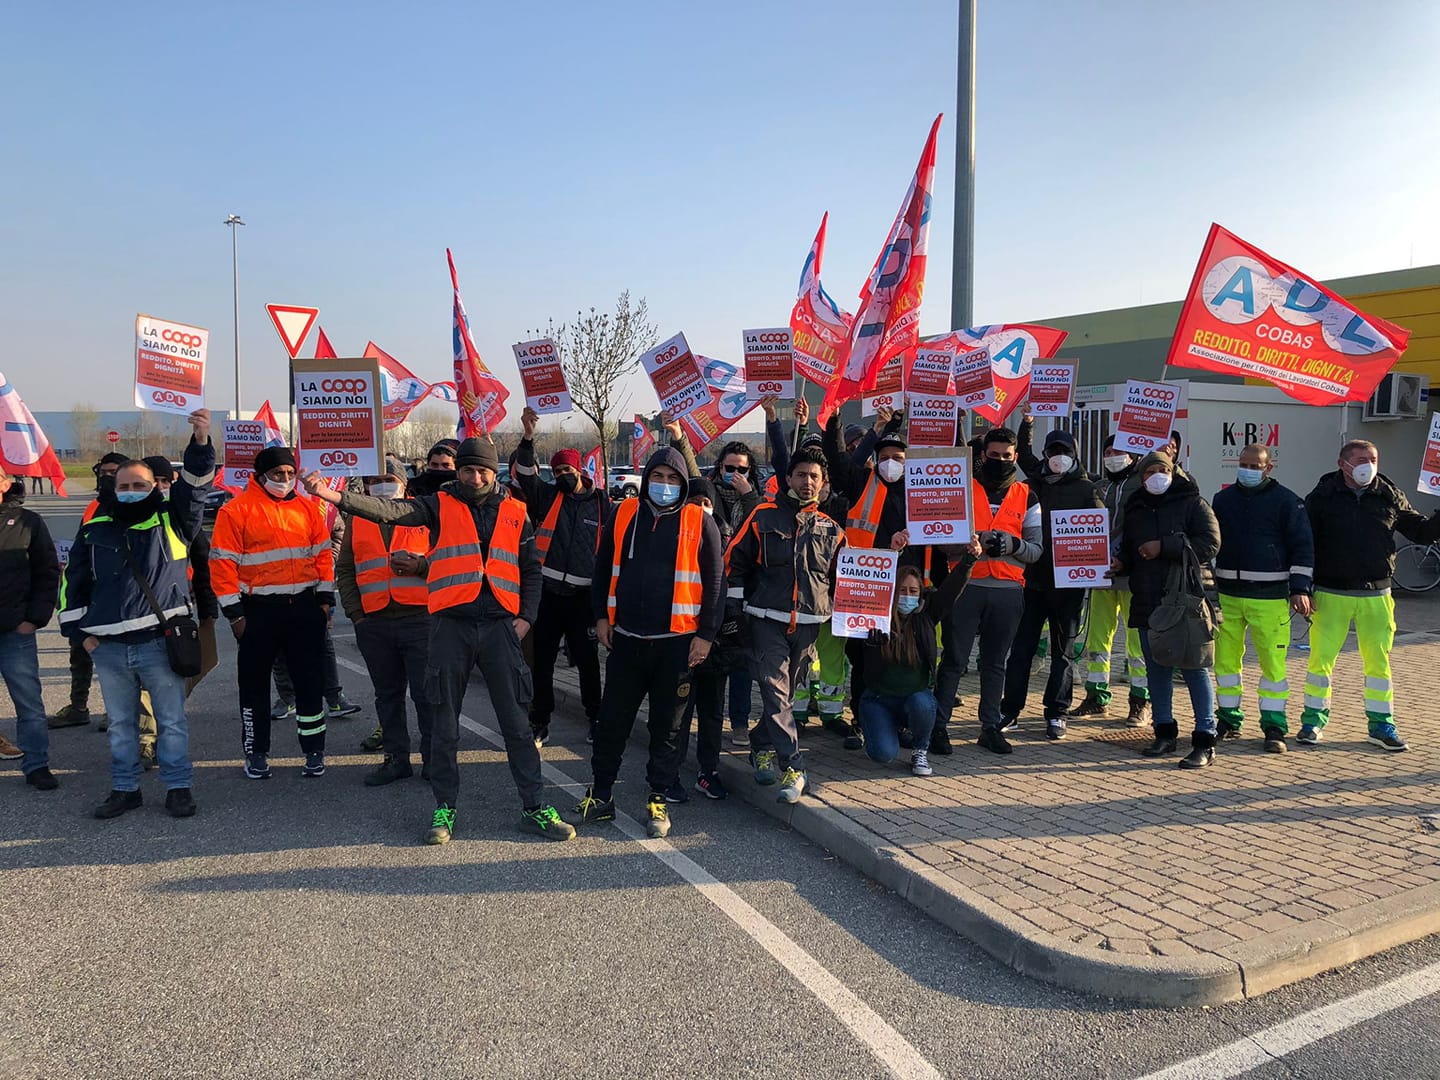 Grande successo dello sciopero alla COOP di Vercelli. Domani nuova giornata di sciopero